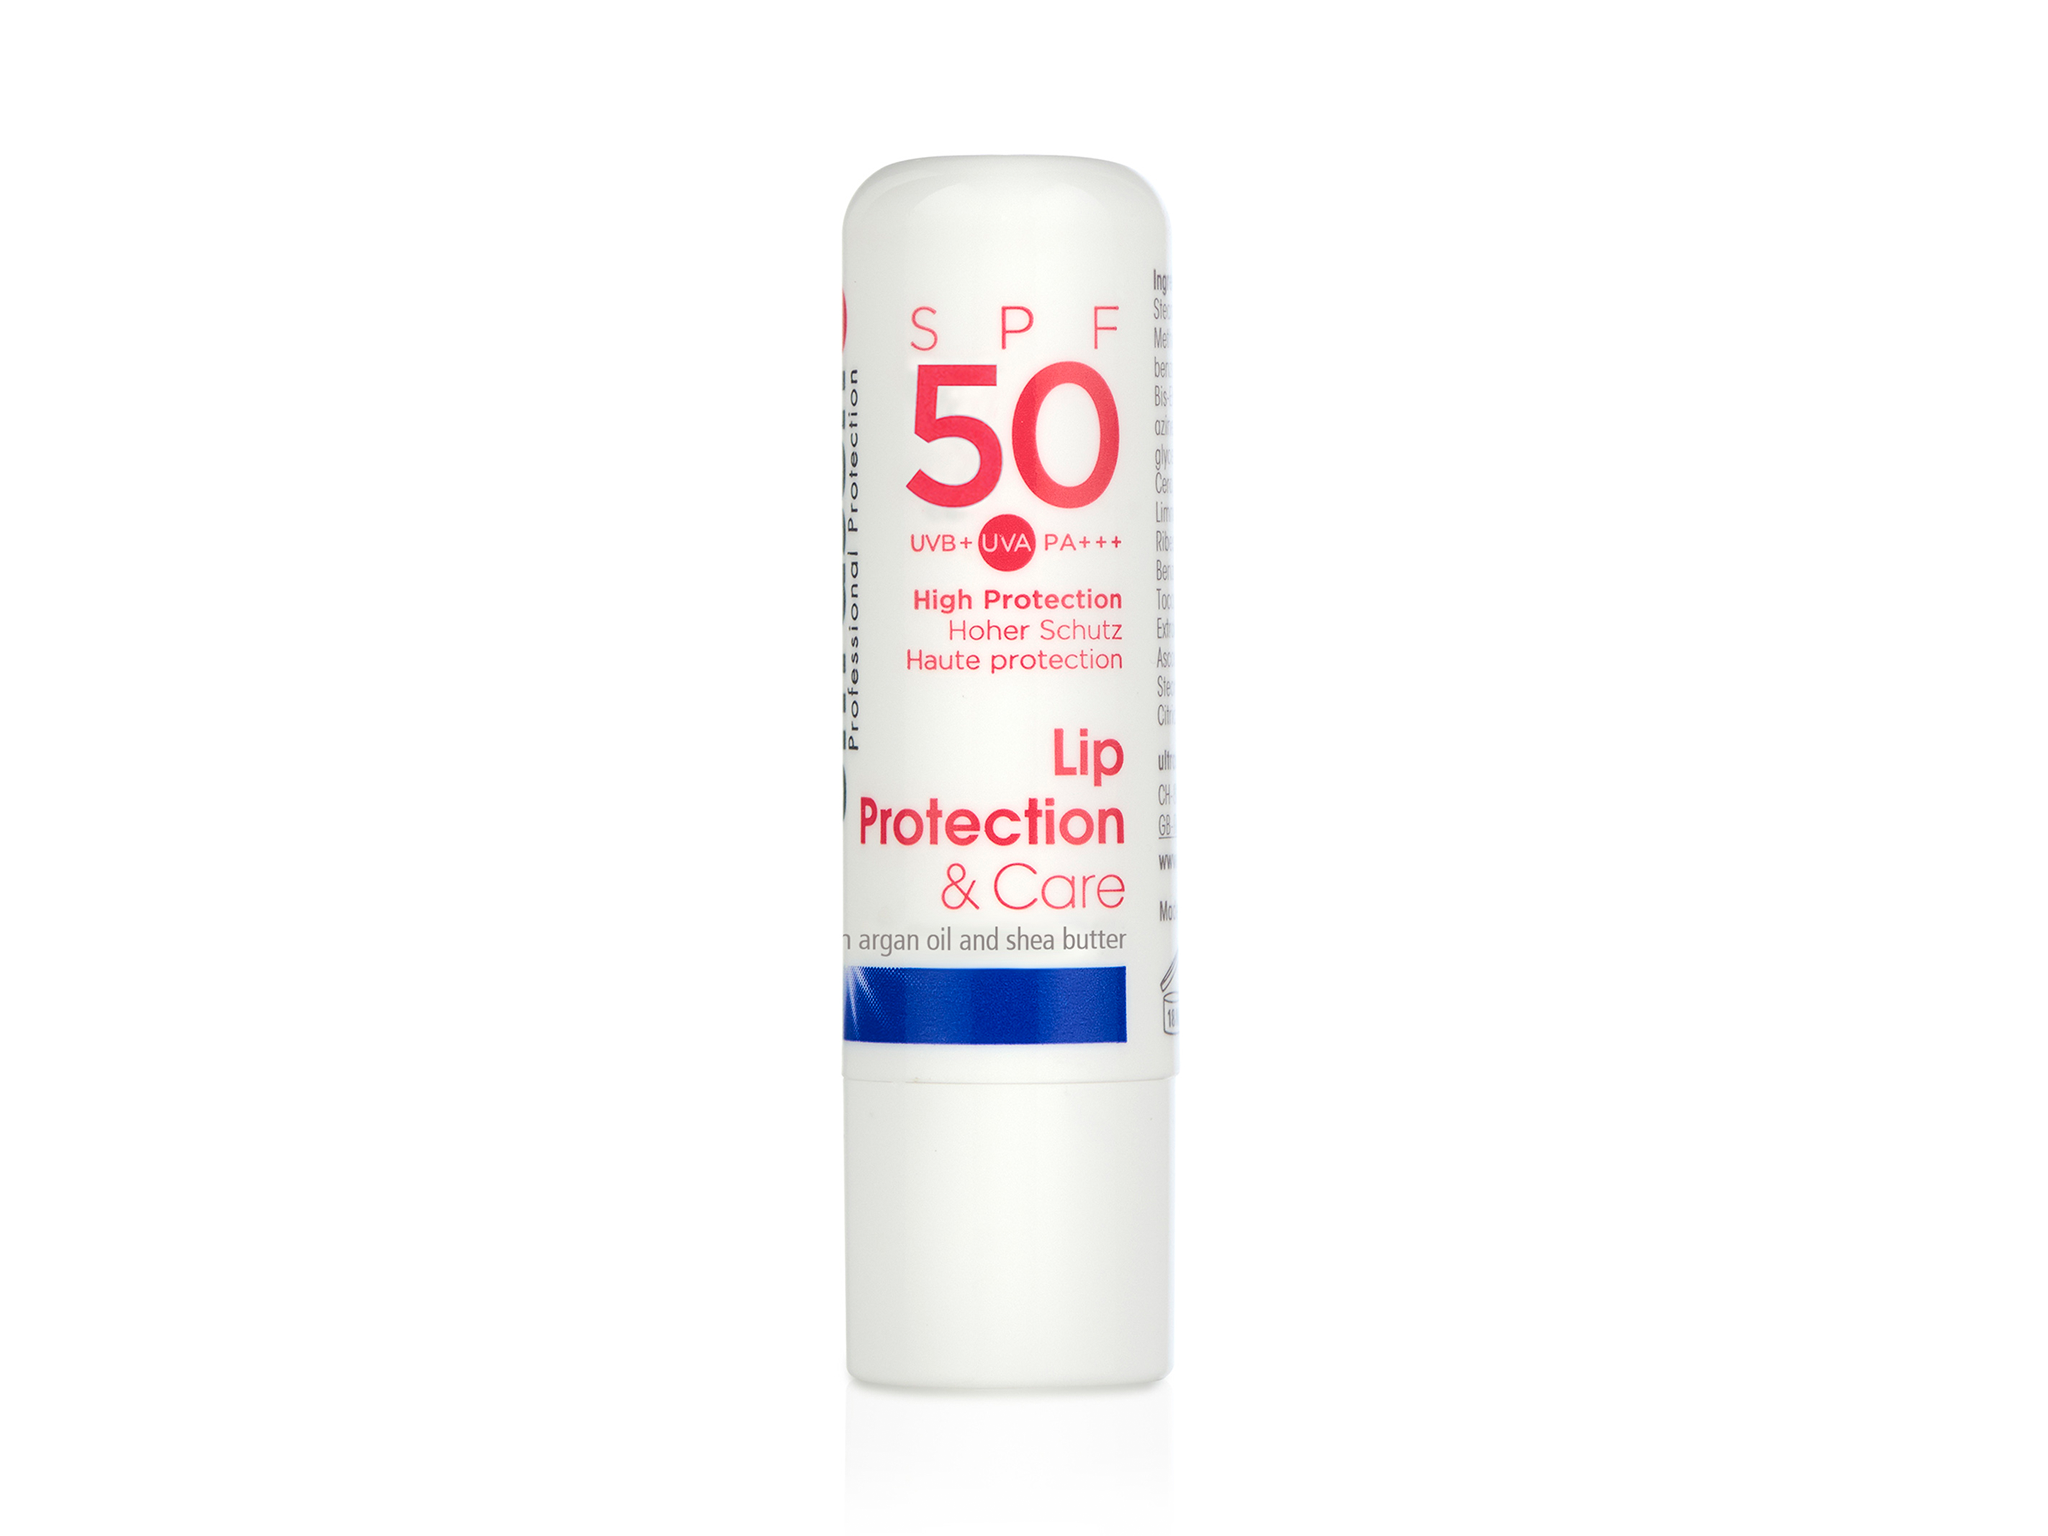 Ultrasun SPF 50 lip protection